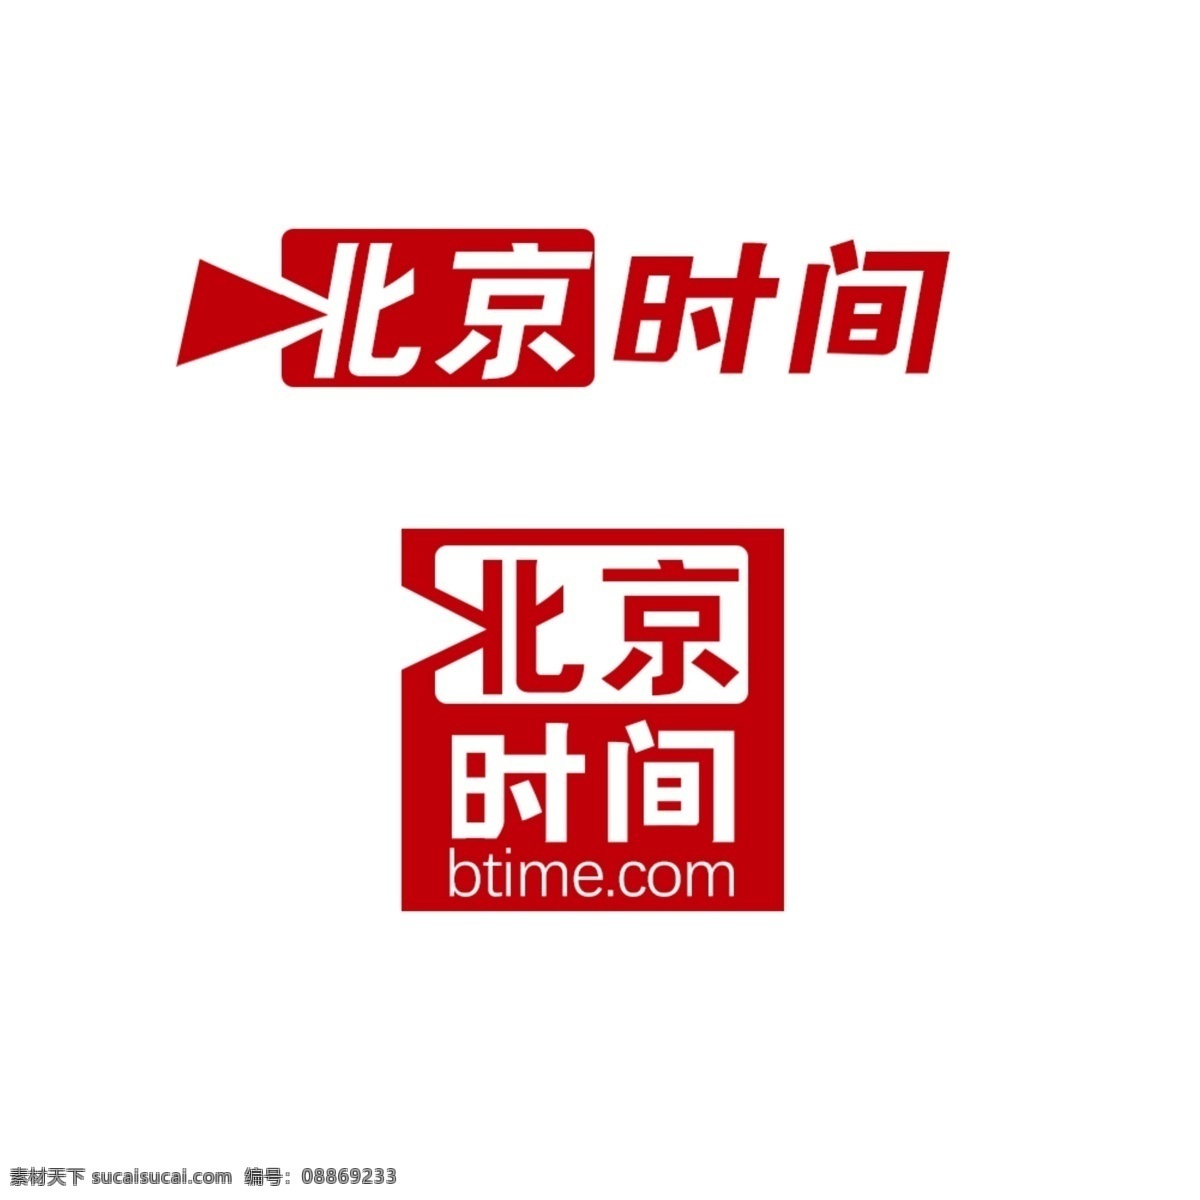 北京 时间 logo 艺术字 北京时间 个性设计 创意logo